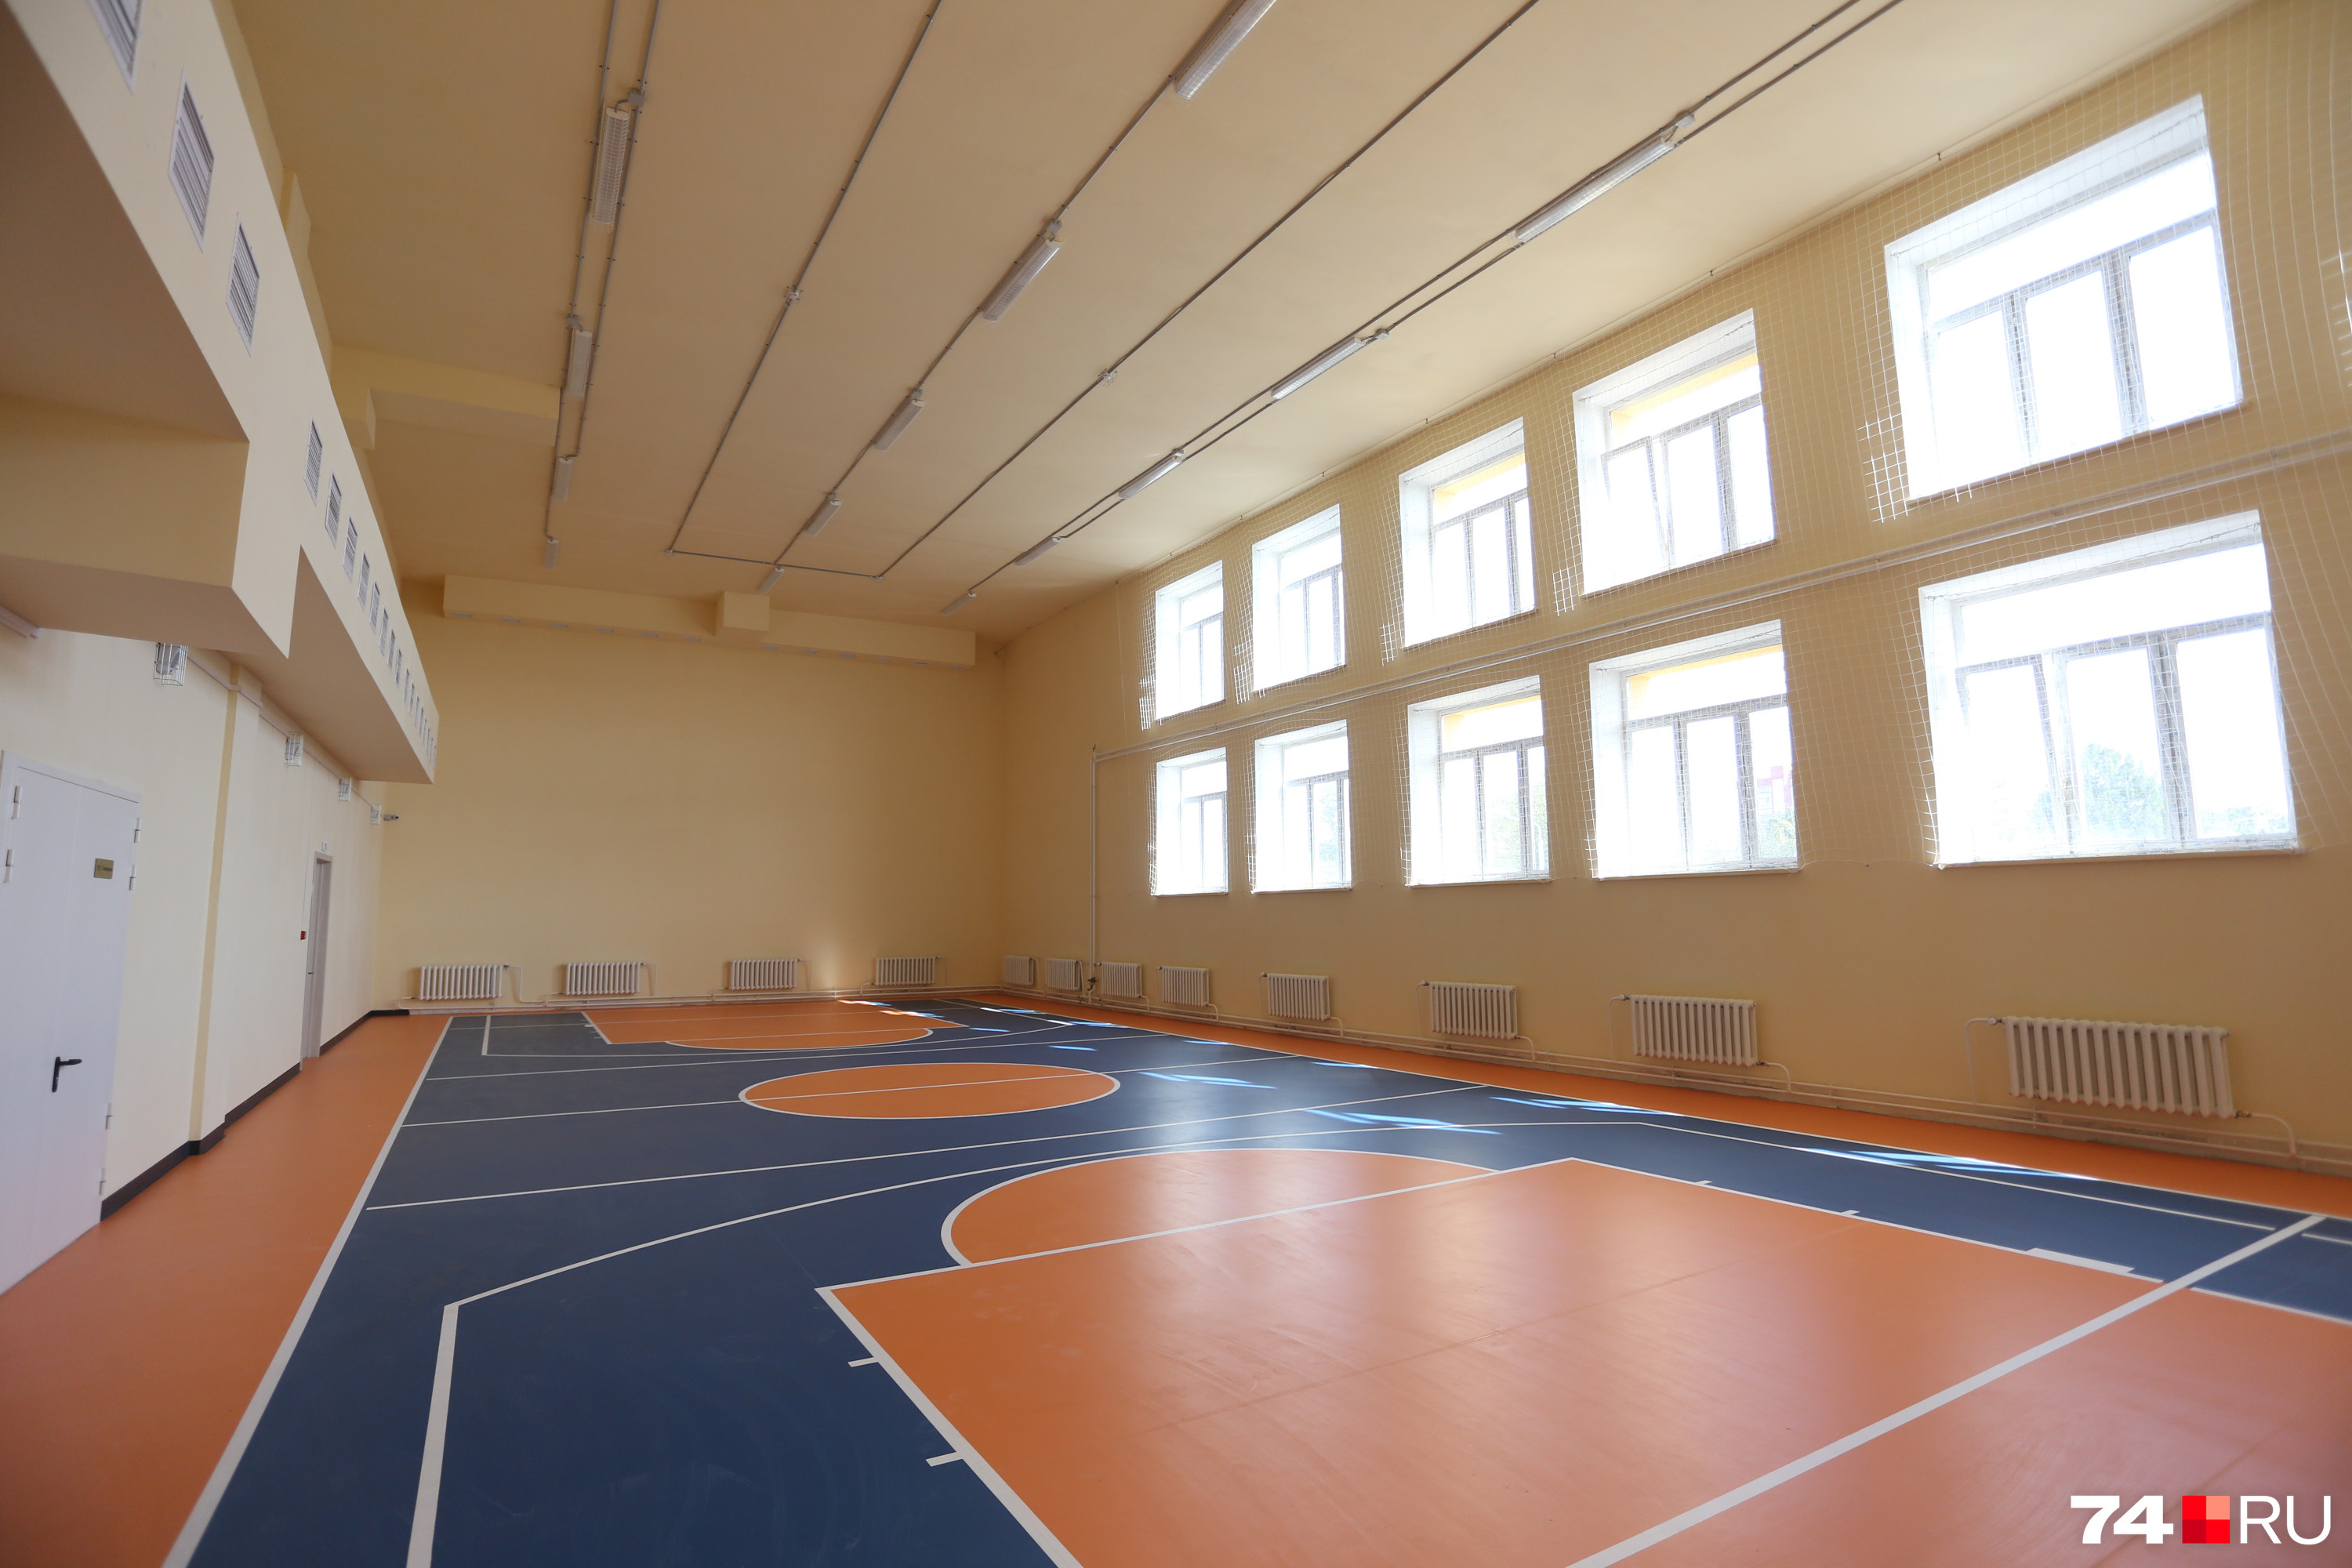 В школе два многофункциональных спортивных зала, один из которых предназначен для занятий фитнесом, аэробикой, хореографией<br>